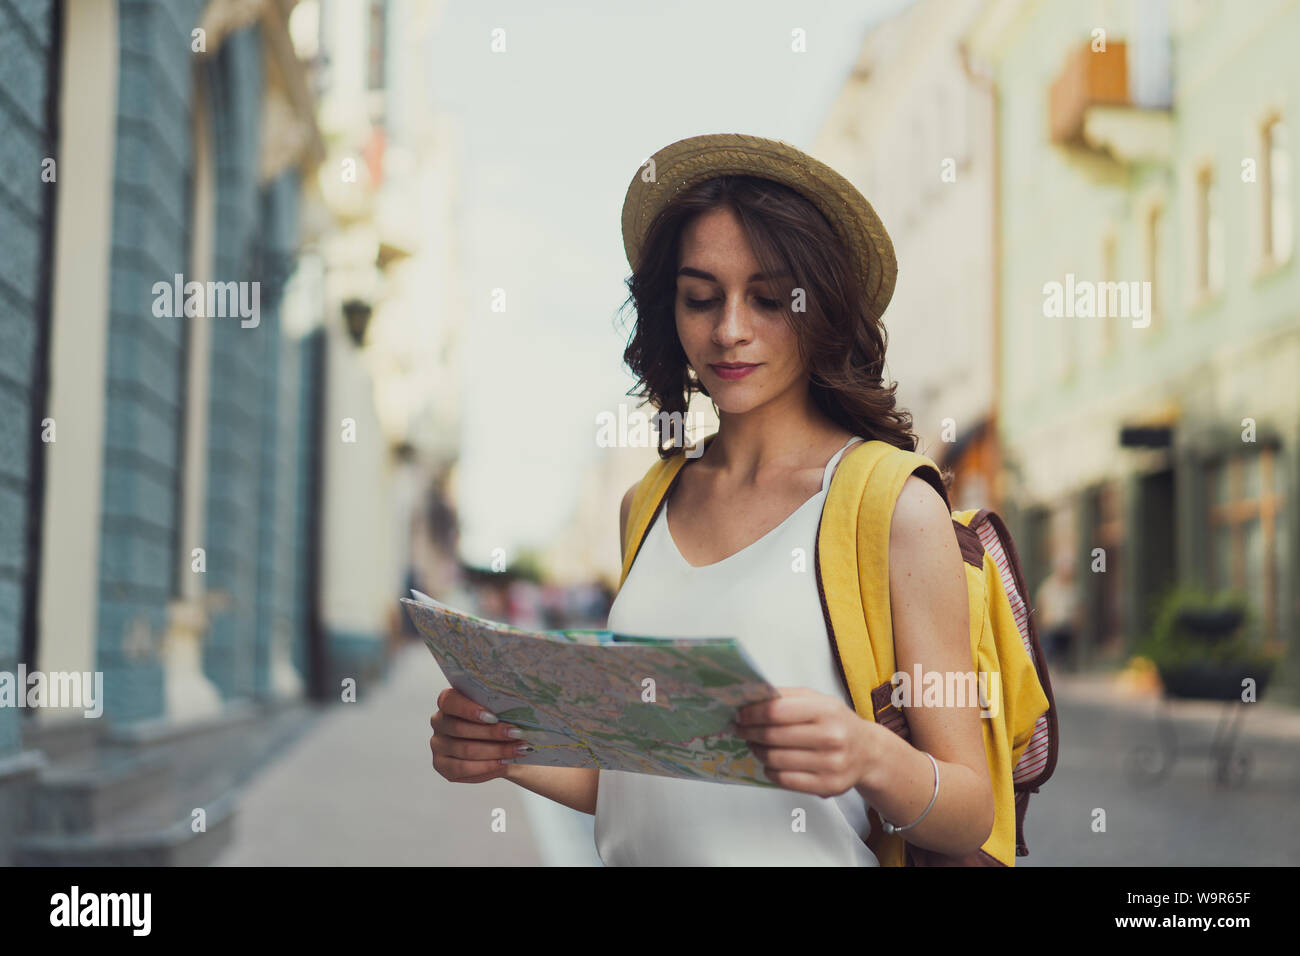 Frau Touristen in die Karte schauen auf die Straße, in der sich europäische Stadt, Reisen in Europa. Mit einem Kurvigen brünette Haare. Einen Rucksack und einen Hut. Stockfoto